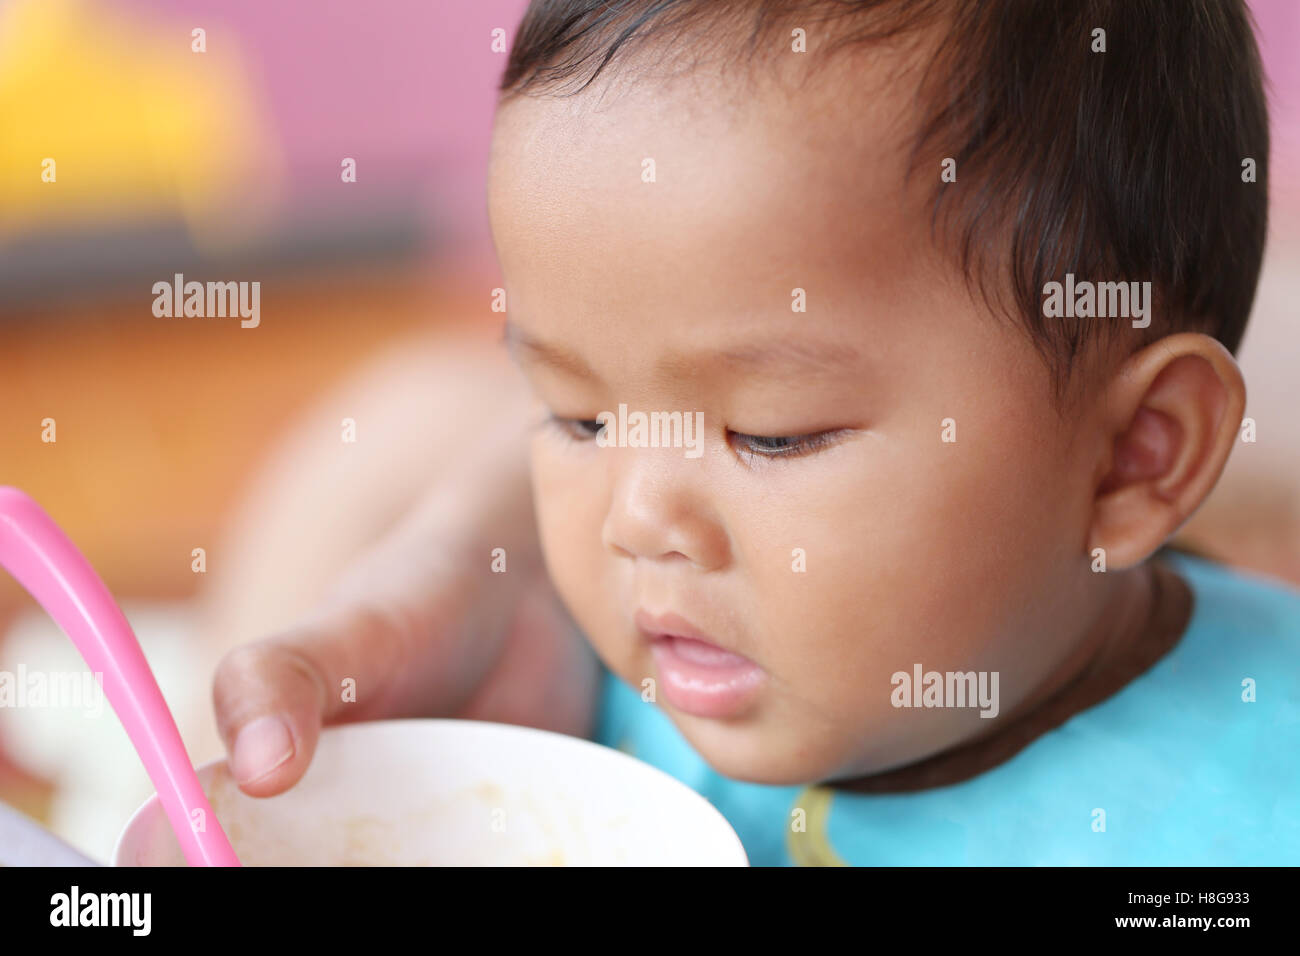 Asiatisches Baby Boy, Essen im Konzept der gesunde Lebensmittel und Ernährung für Entwicklung und Wachstum. Stockfoto